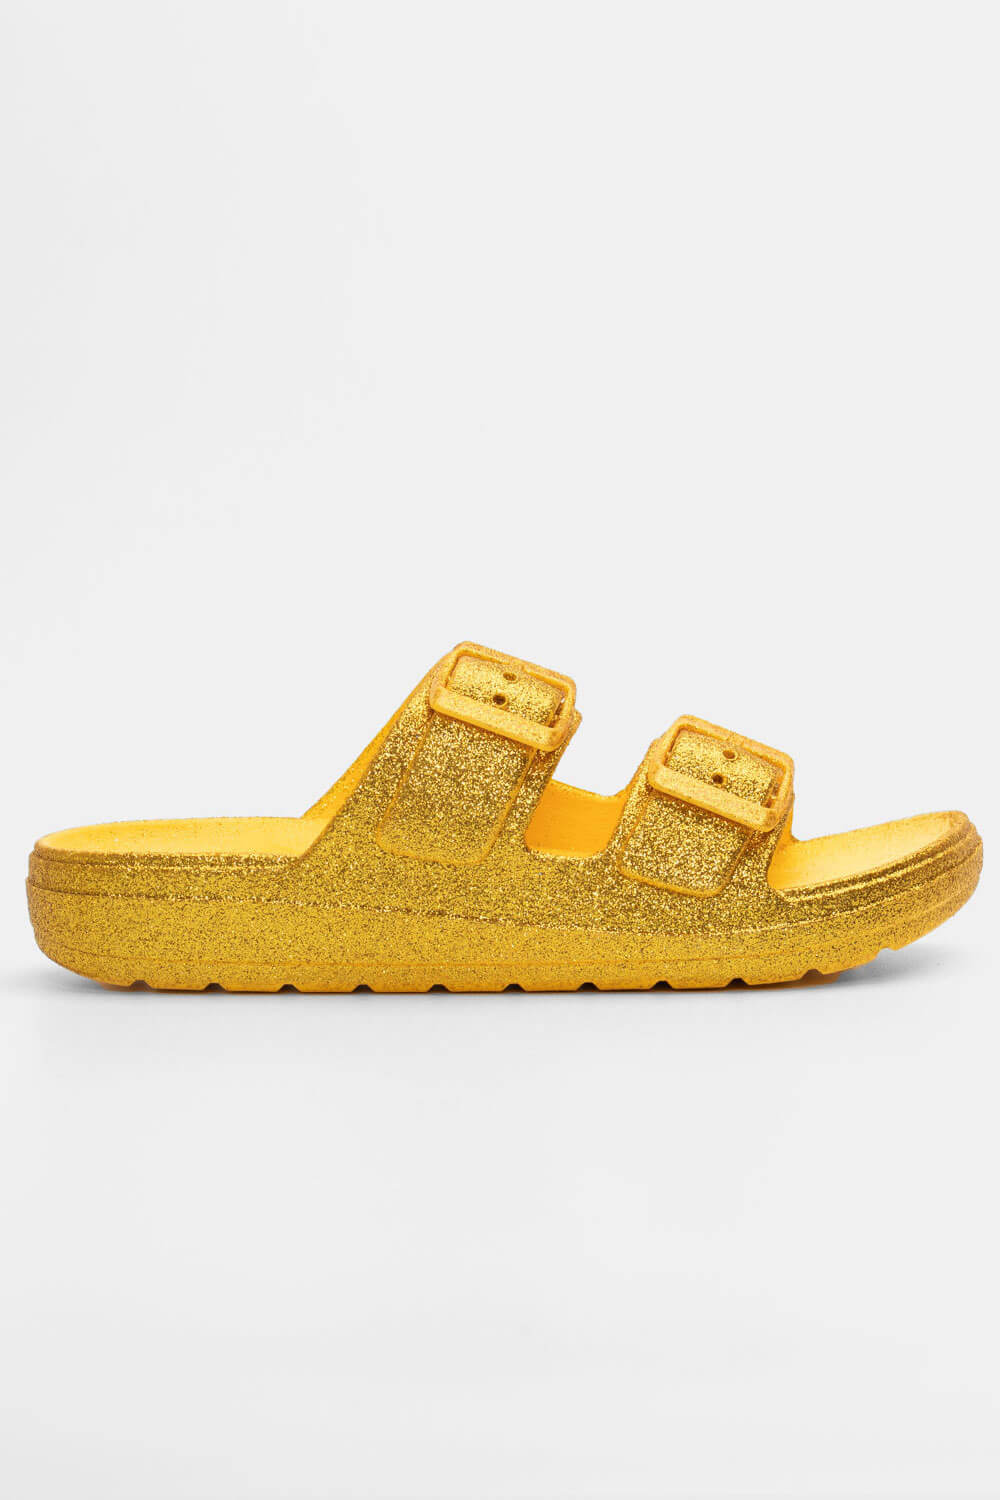 ΠΑΠΟΥΤΣΙΑ > Jelly Shoes Παντόφλες με Δύο Τόκες & Glitter - Κίτρινο